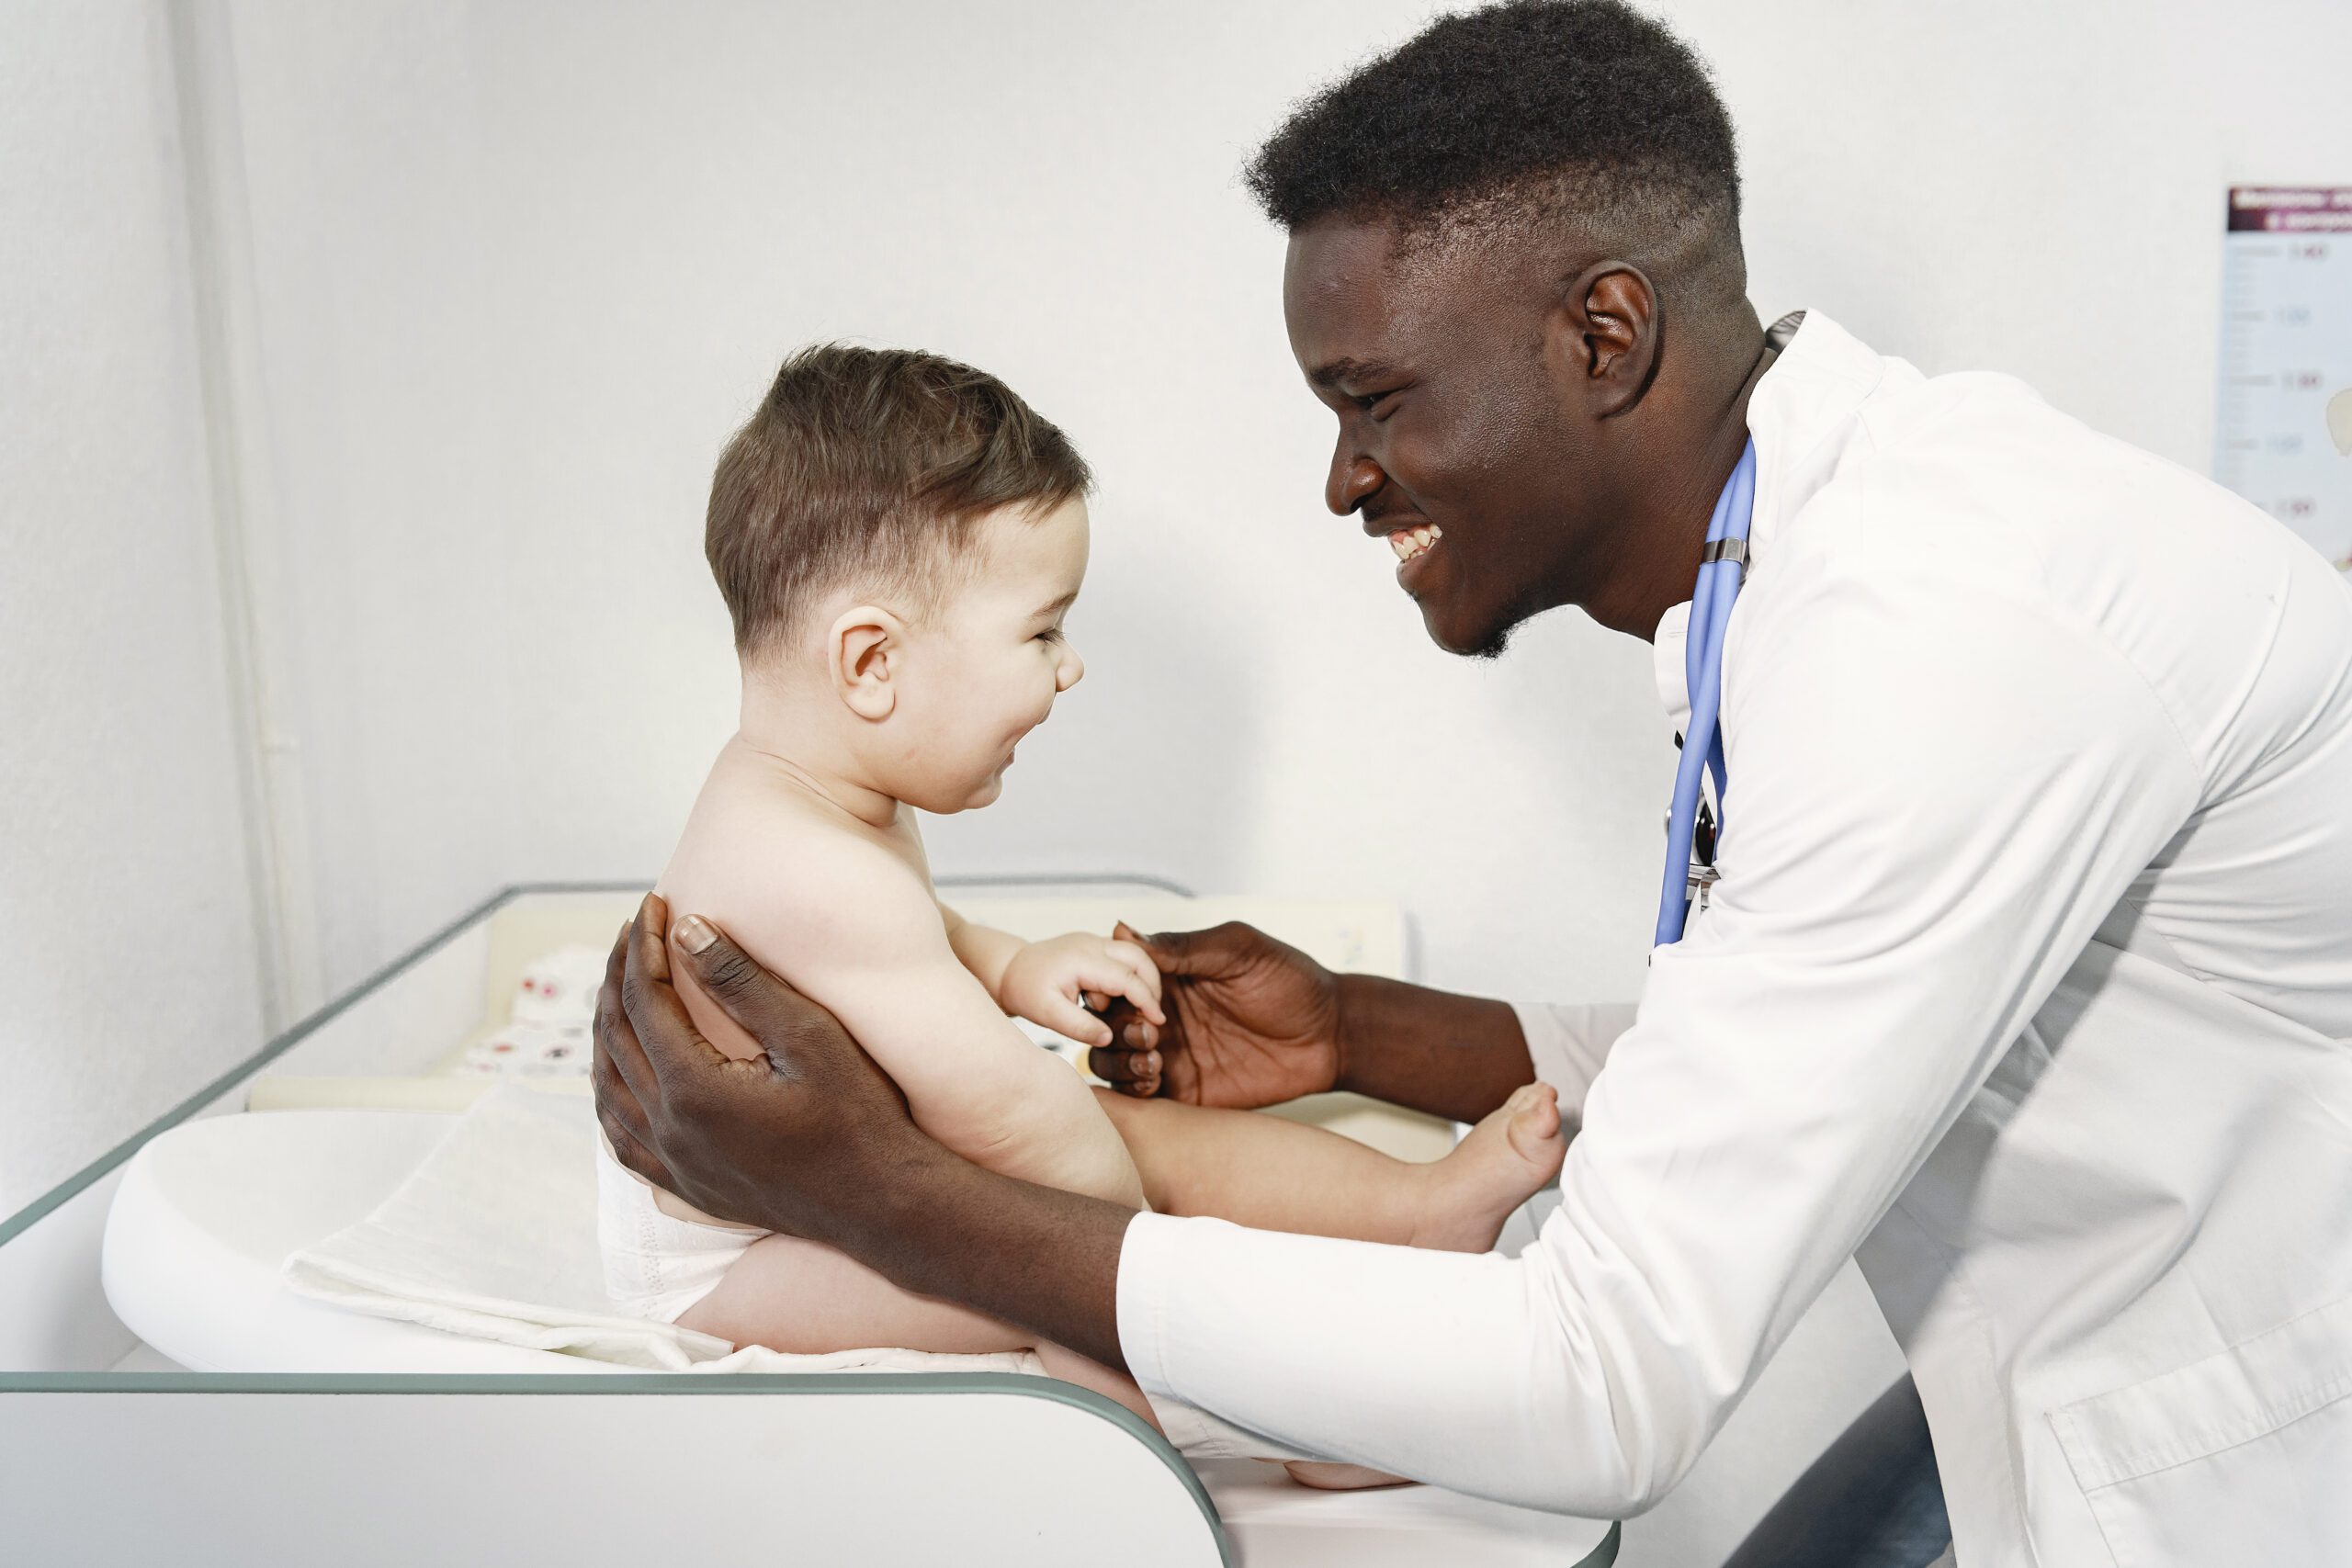 Especialidades médicas: clínica médica e pediatria são as mais comuns do país